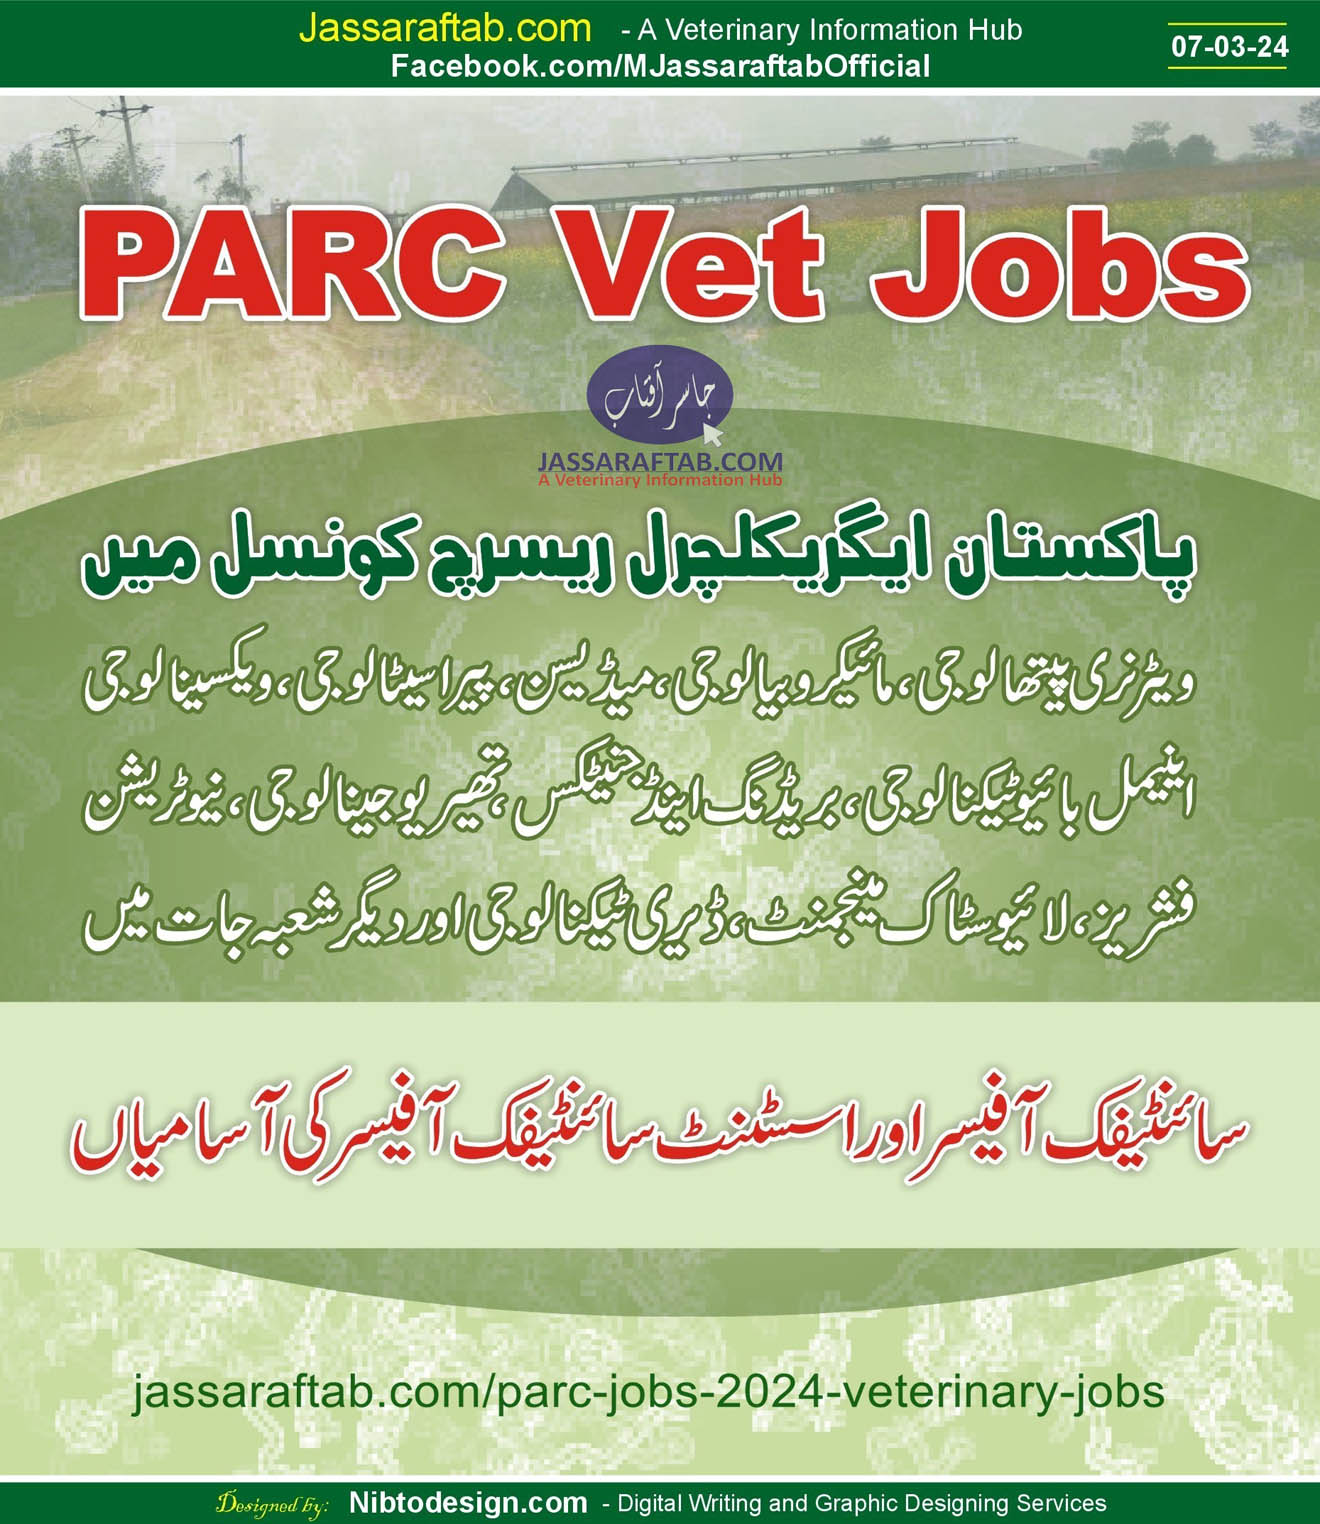 پاکستان ایگریکلچرل ریسرچ کونسل میں ویٹرنری پروفیشنلز، اینیمل سائنس پروفیشنلز اور دیگر کیلئے ملازمت کے مواقع